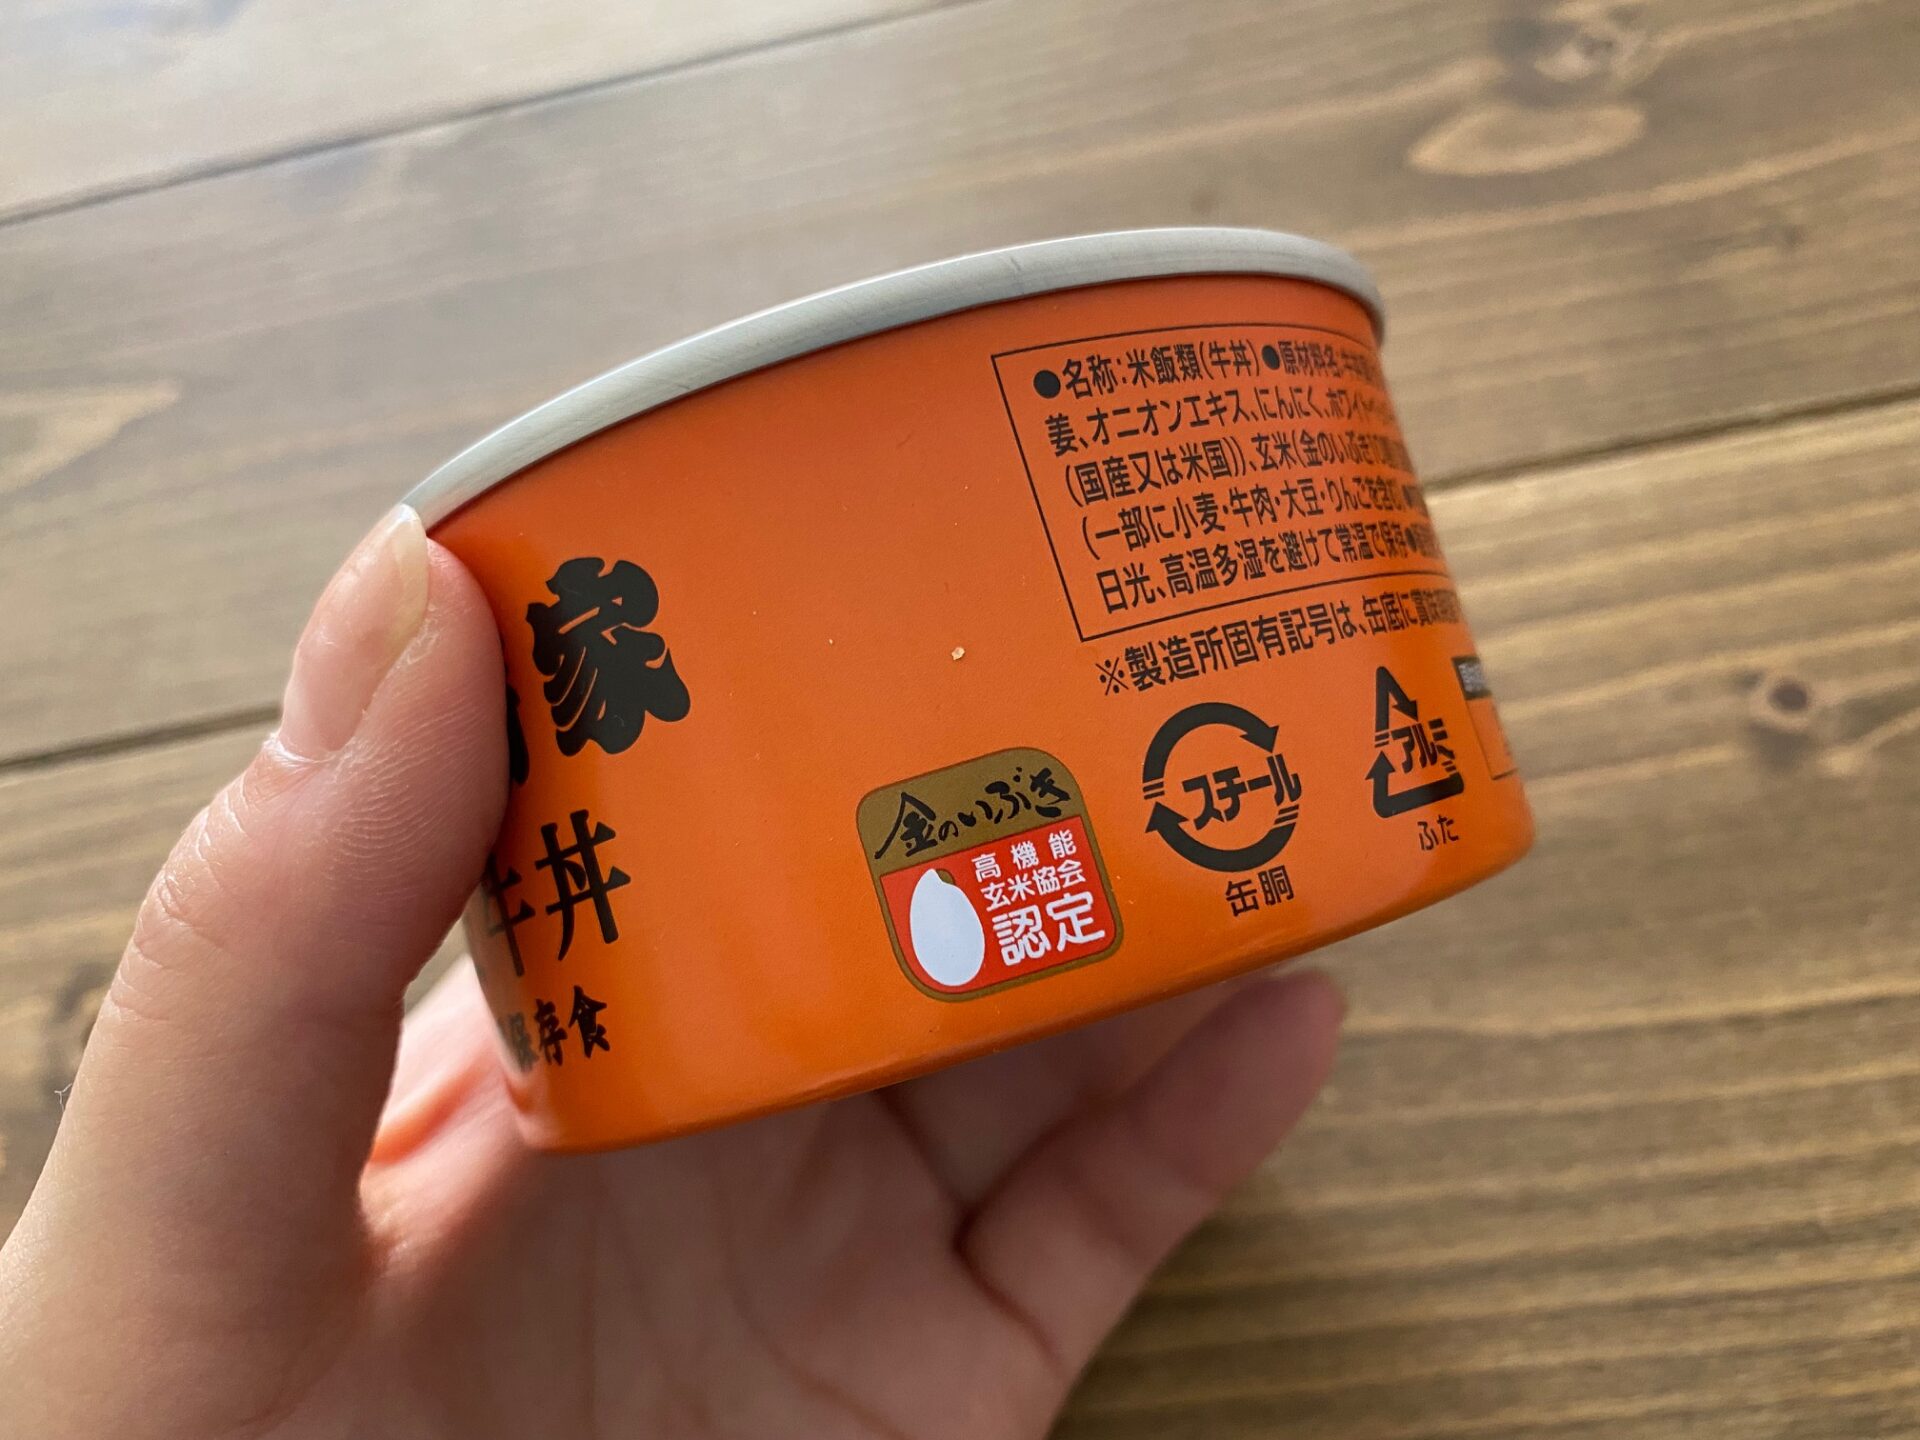 缶飯ぎゅうどんのパッケージ写真。種類によって缶の色が異なりますが、ぎゅうどんはオレンジ色の缶。そして、きんのいぶきのマークもついています